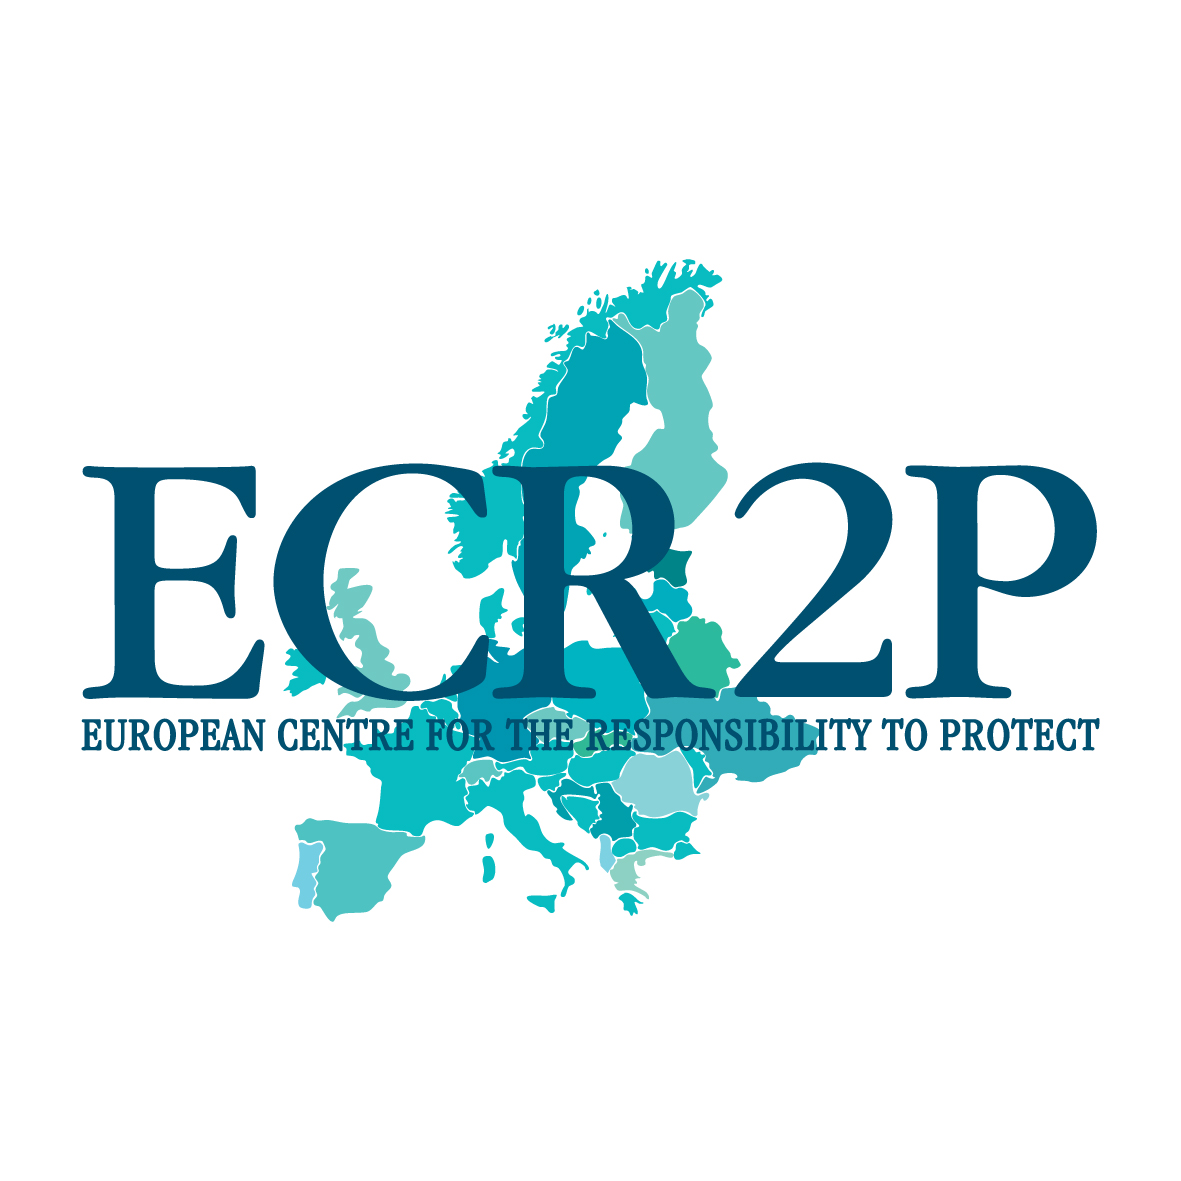 ECR2P@LeedsPOLIS at the European External Action Service